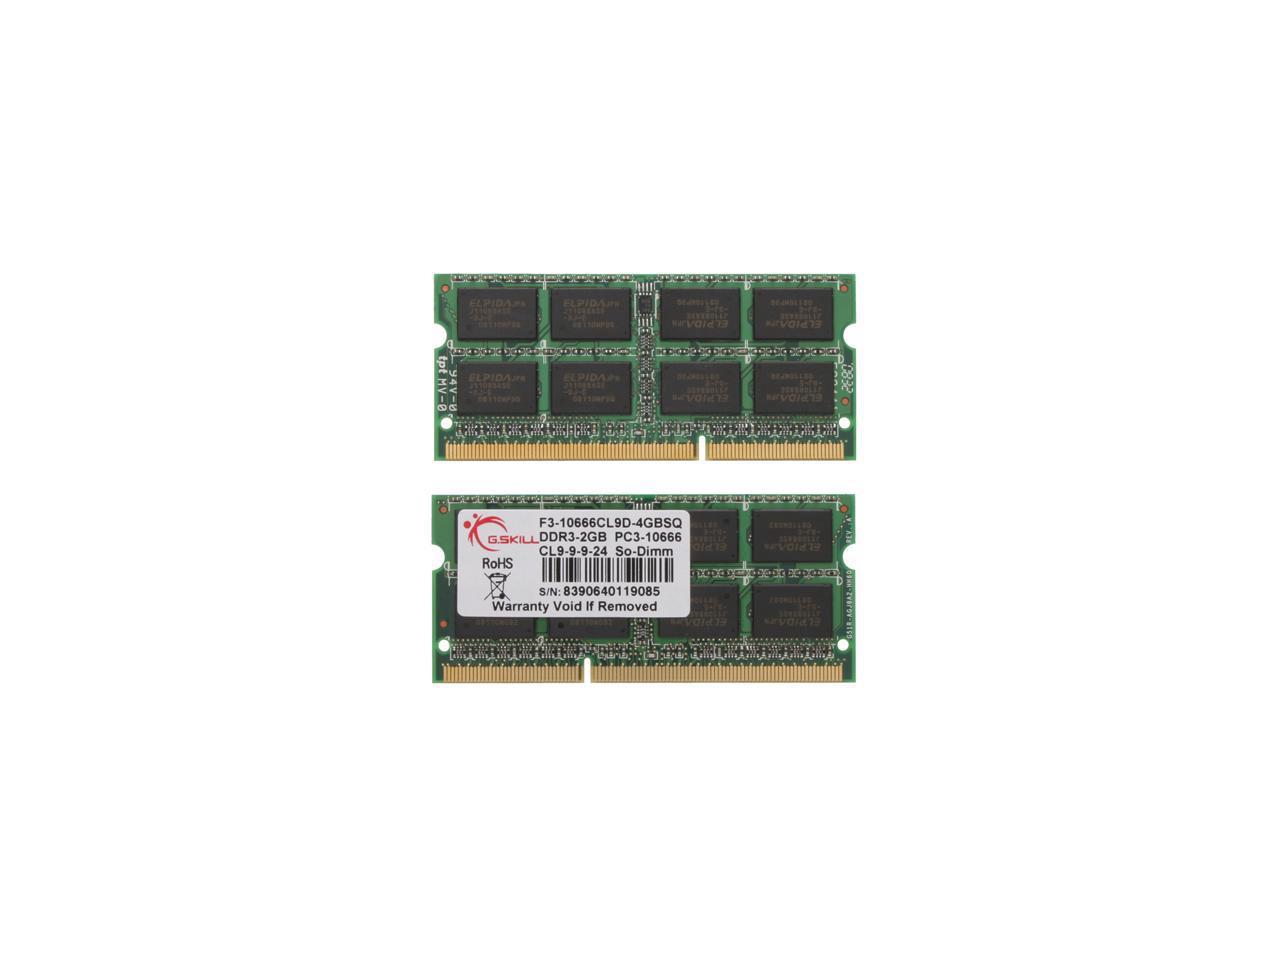 G.SKILL 4GB (2 x 2GB) 204-Pin DDR3 SO-DIMM DDR3 1333 (PC3 10666) Dual Channel Kit Laptop Memory Model F3-10666CL9D-4GBSQ